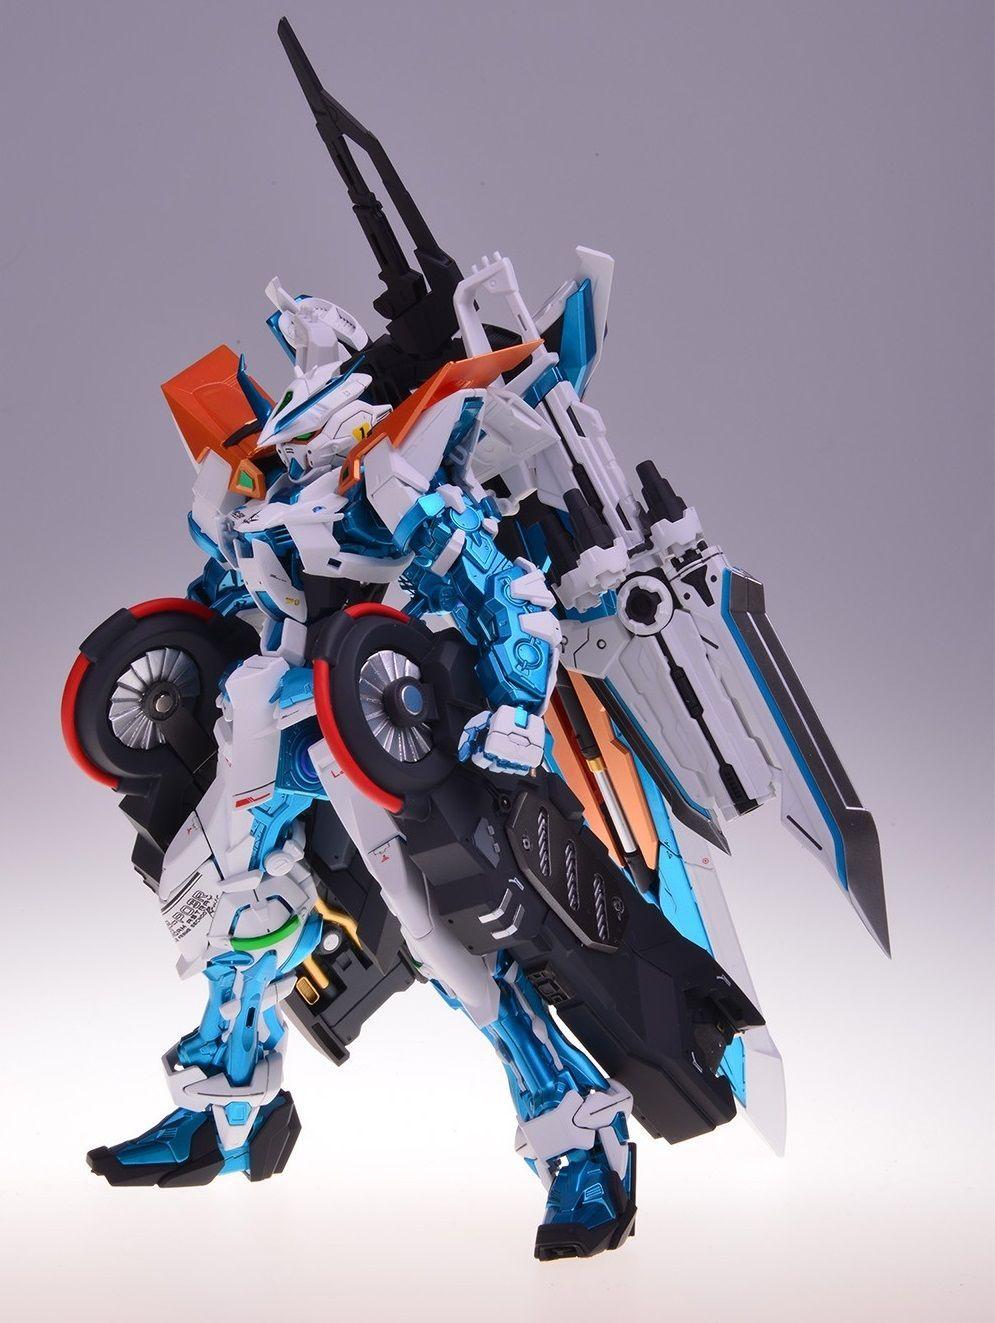 MG Gundam Astray Blue Frame Custom: Excellent Work by kourai80. Full